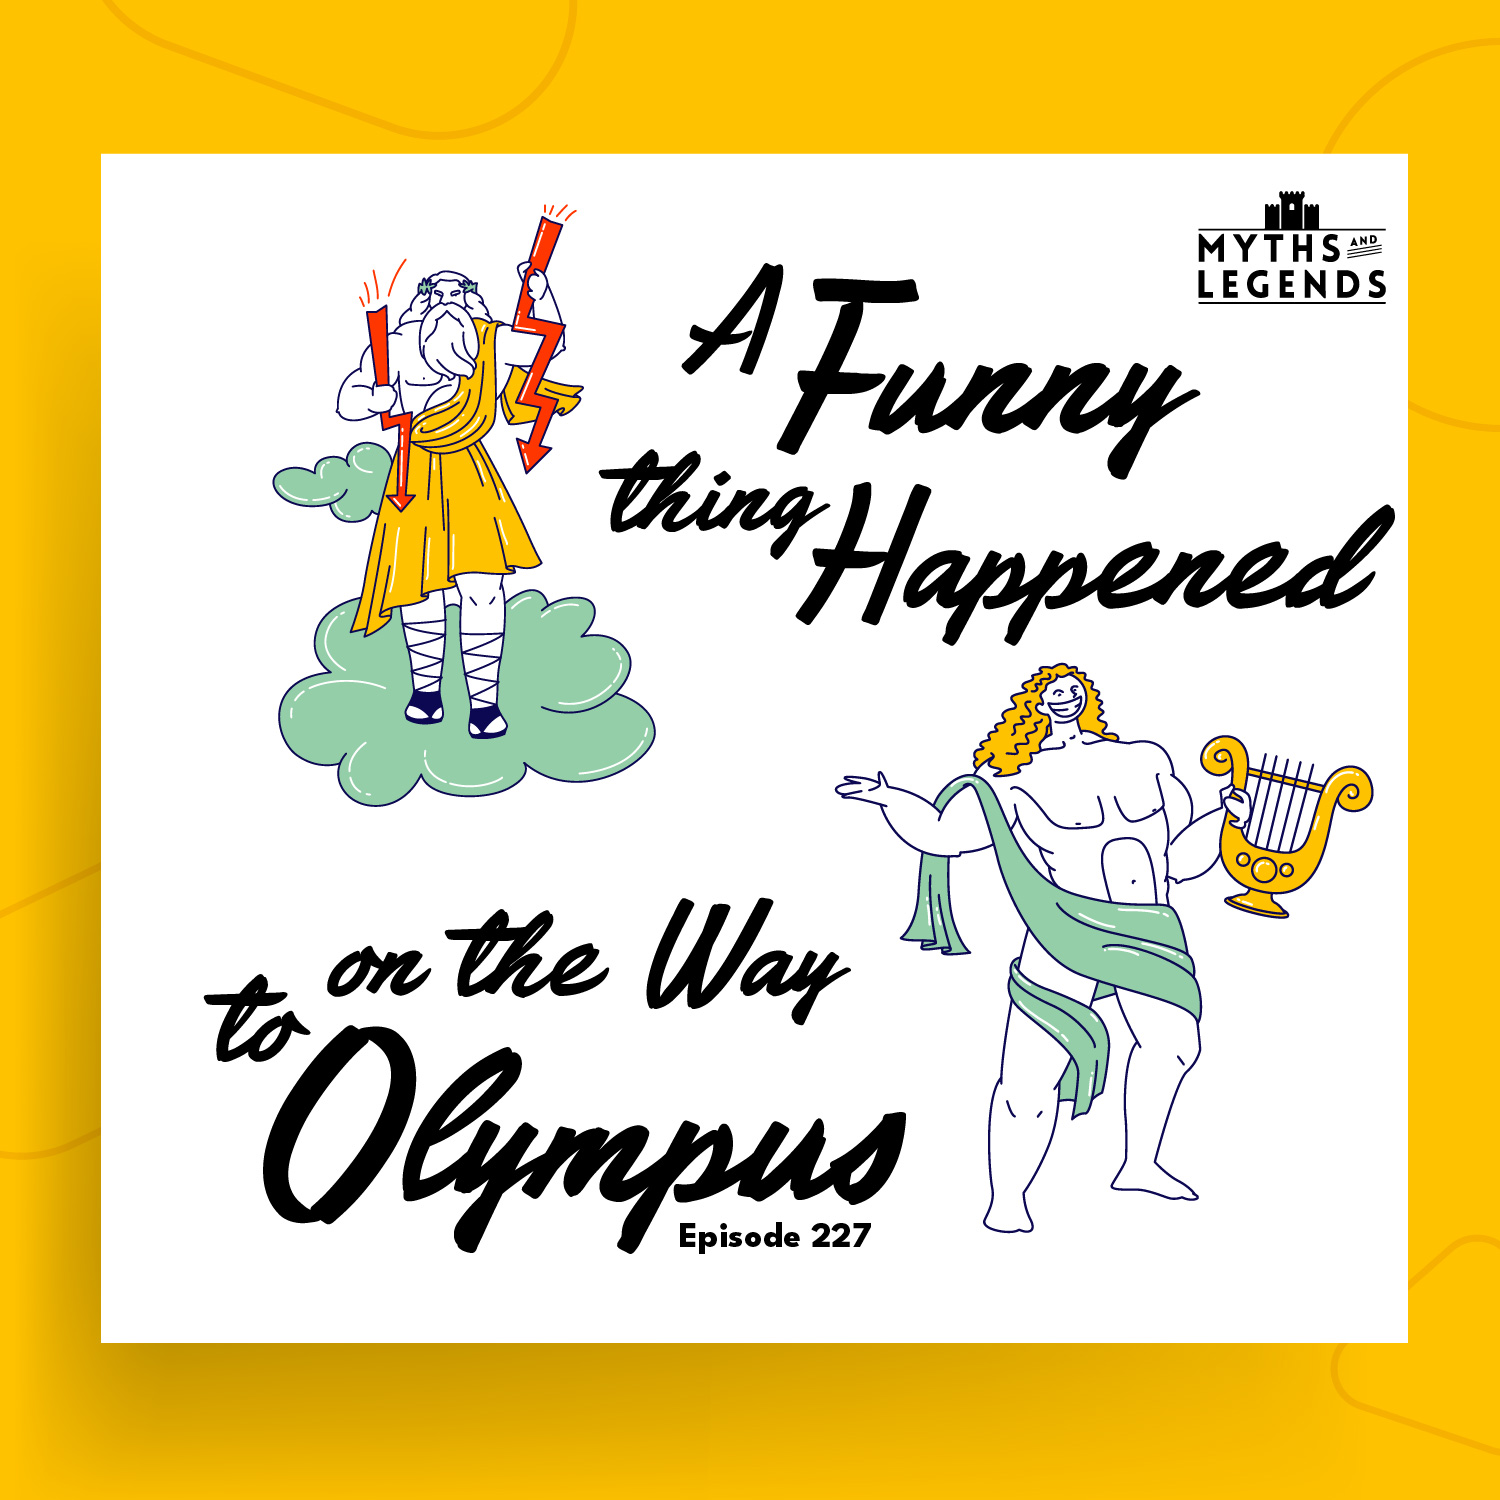 Myths of Olympus